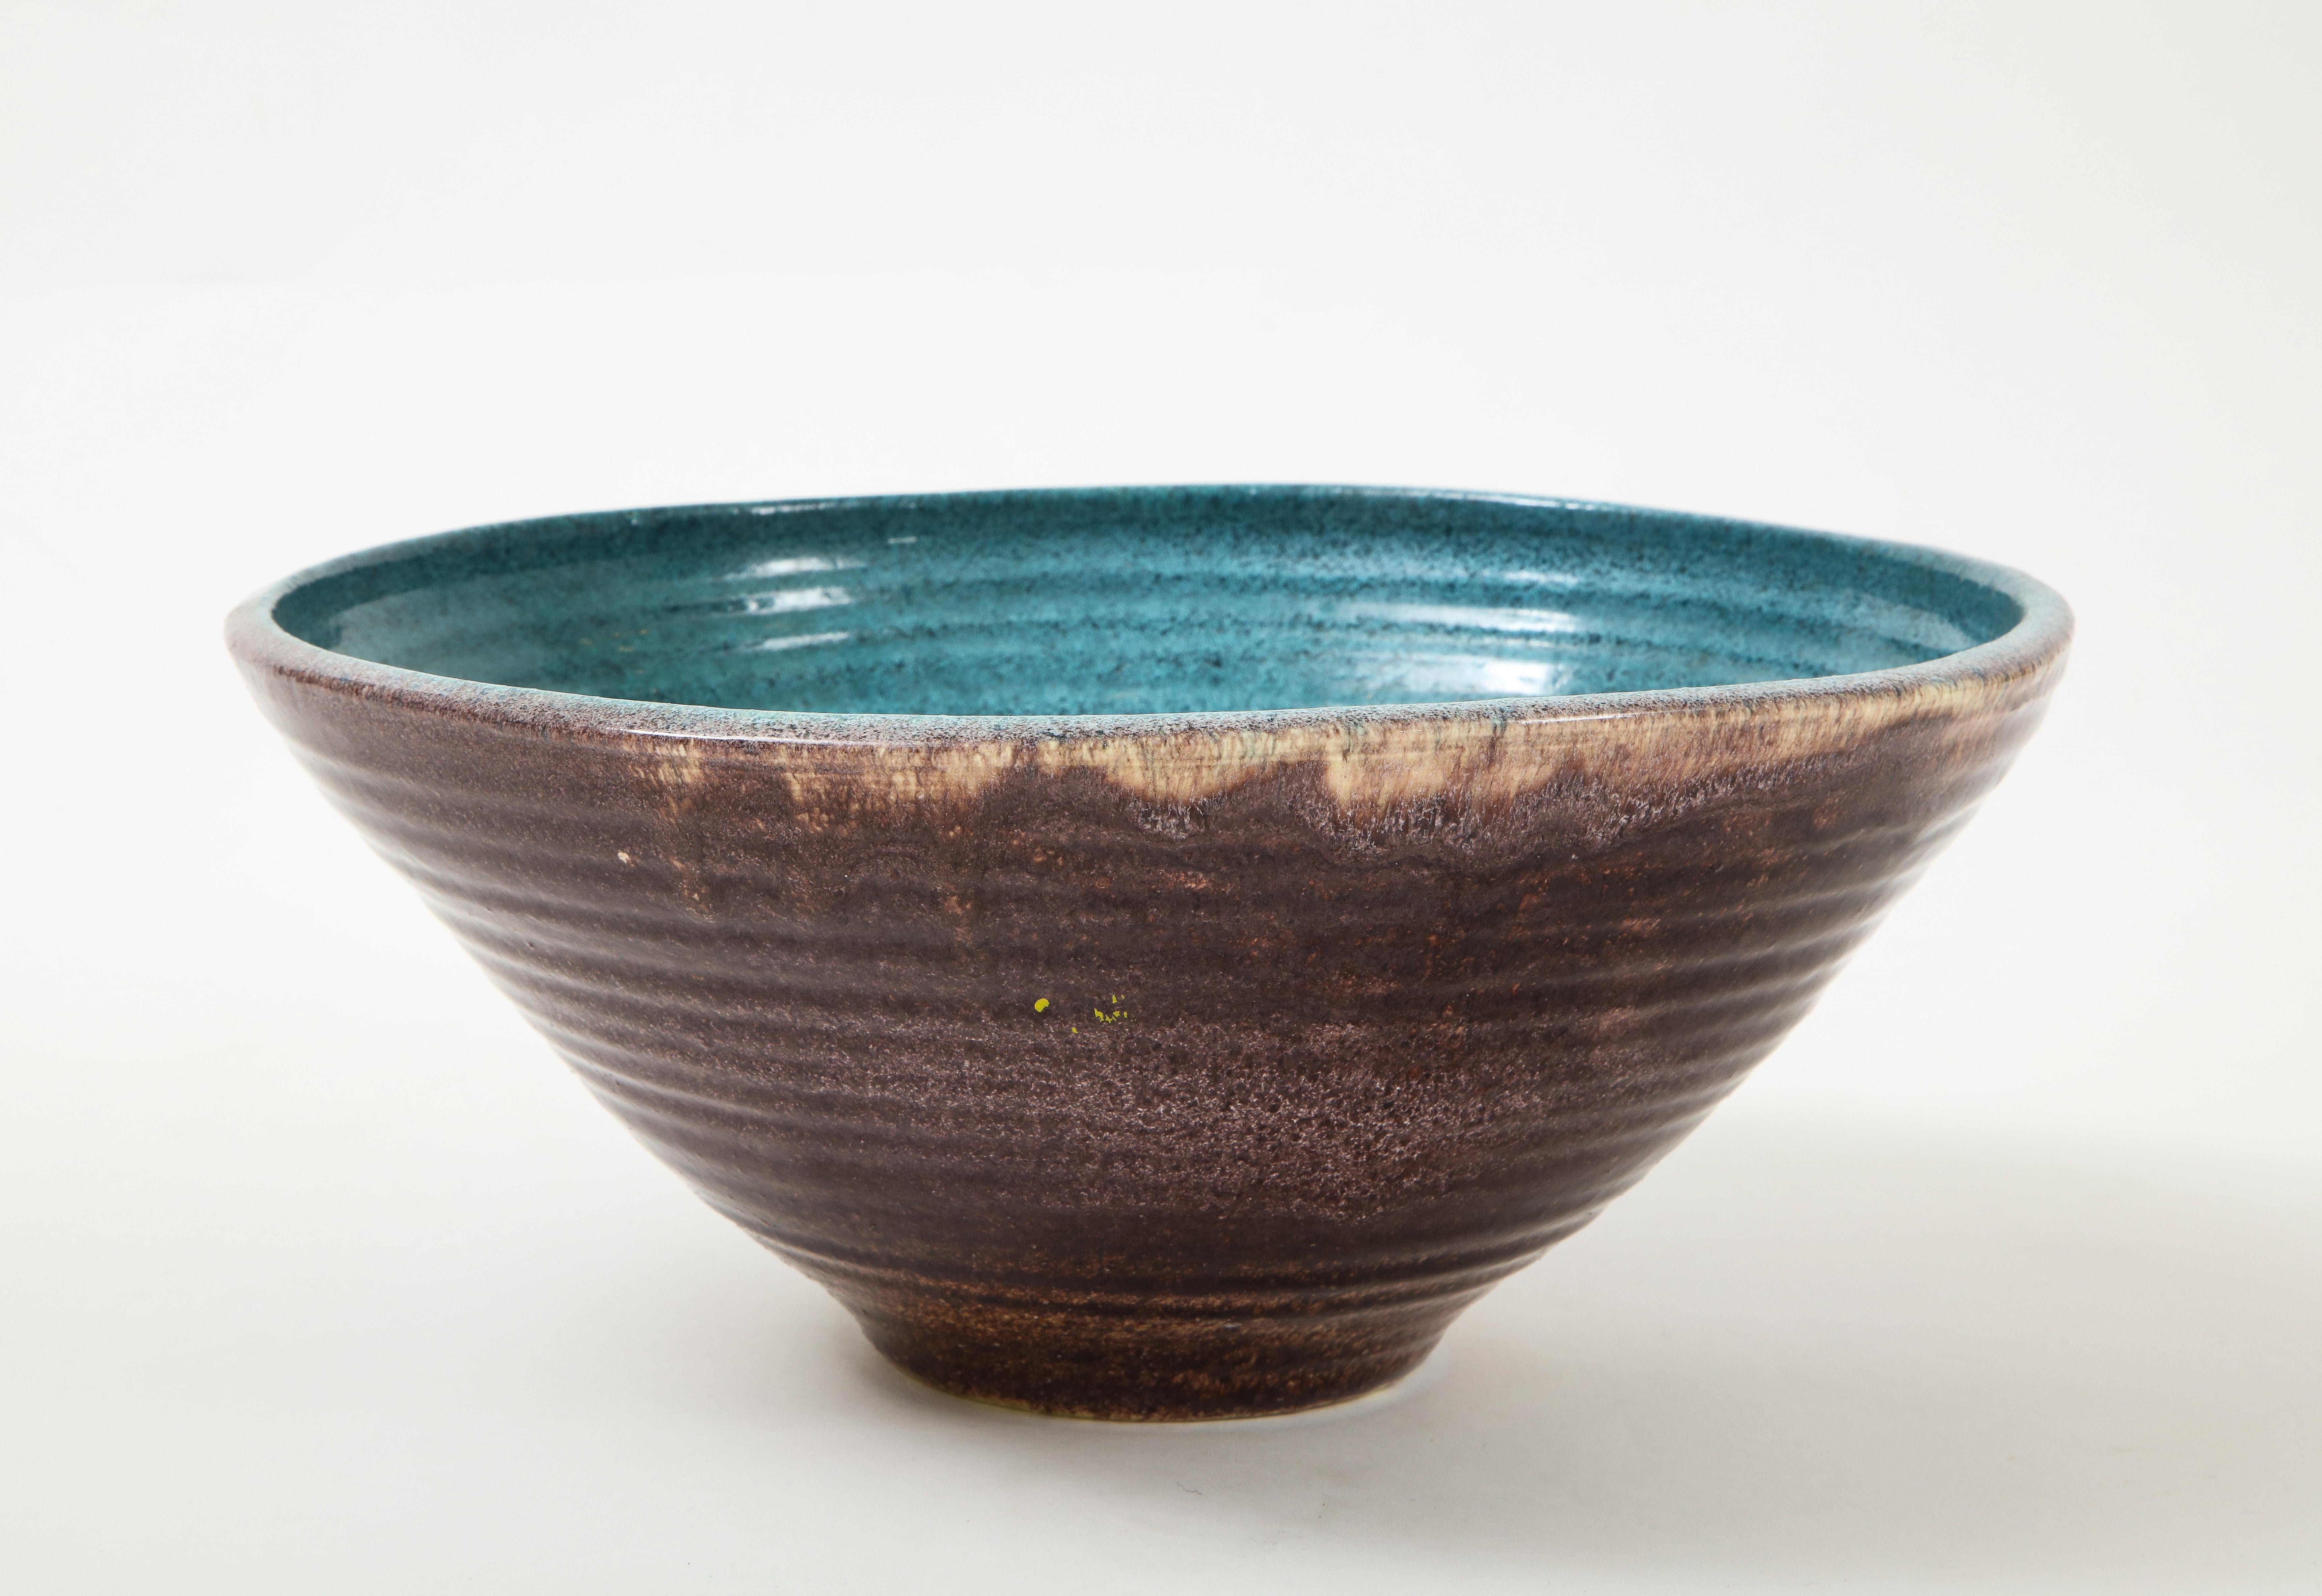 Un bol unique produit par la poterie Accolay en France. Une des nombreuses pièces d'Accolay dans notre inventaire, nous aimons cette pièce d'accent pour sa forme et sa belle glaçure.